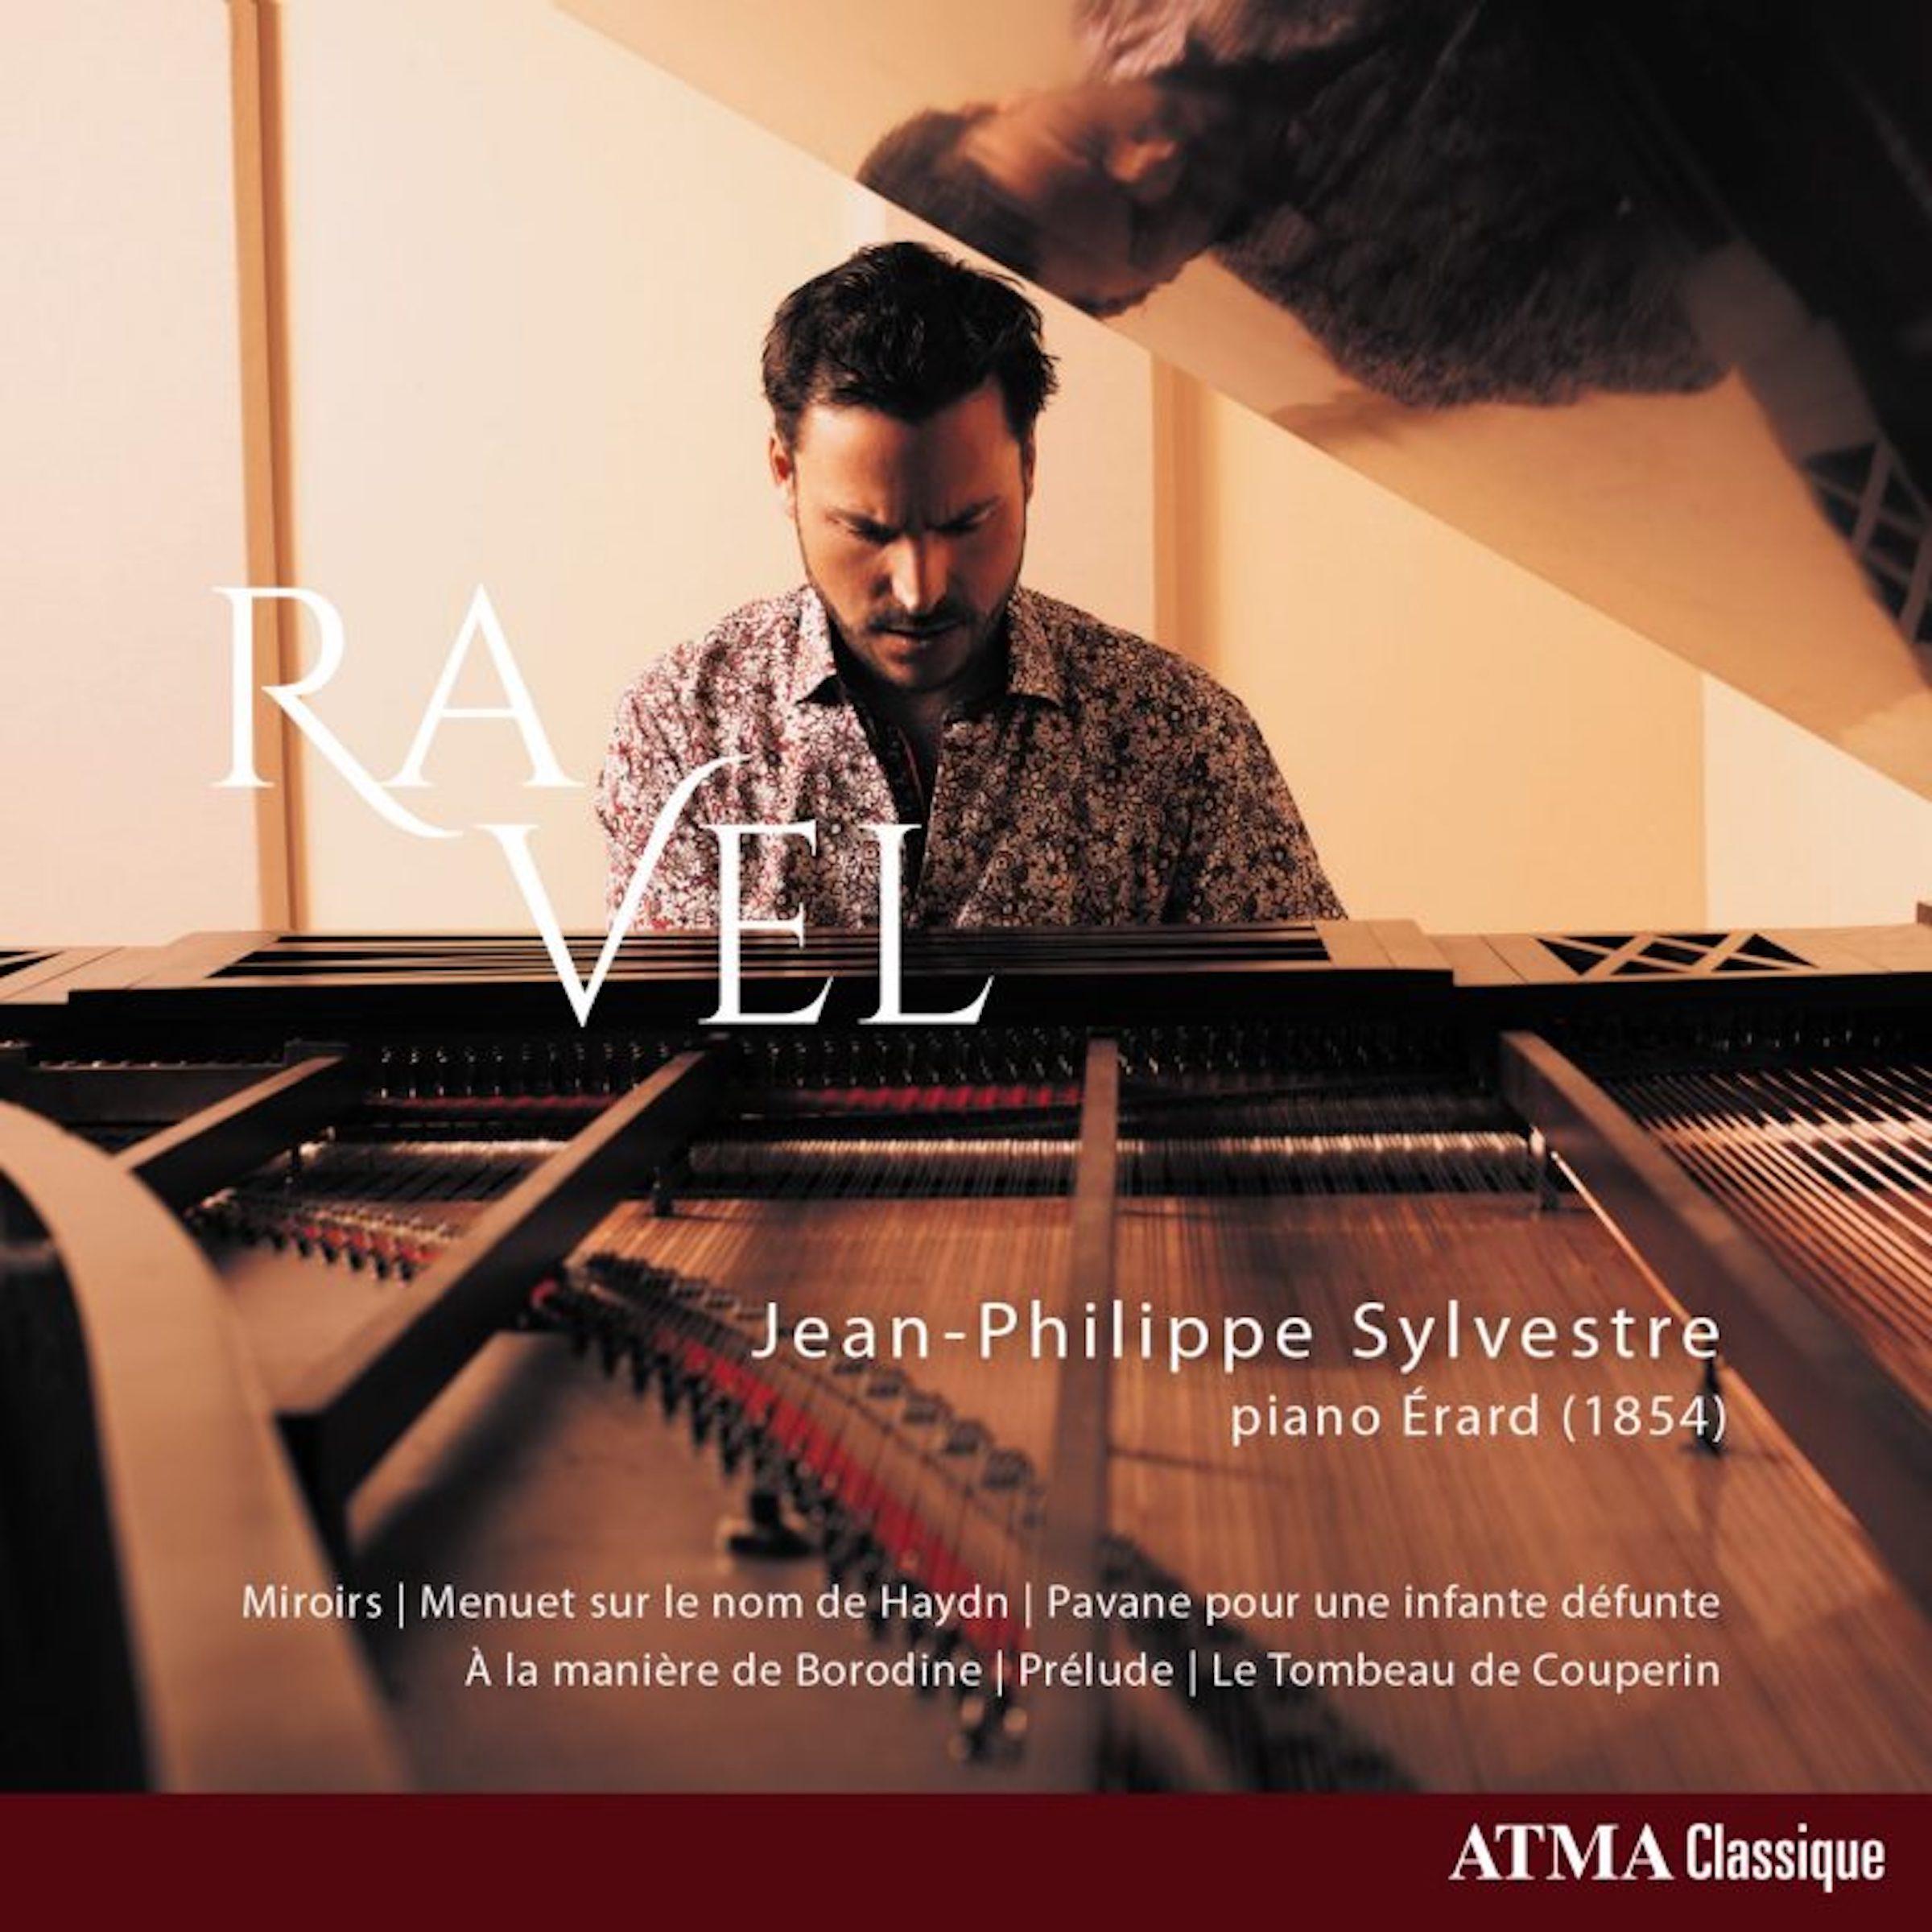 Musique de Ravel, ATMA